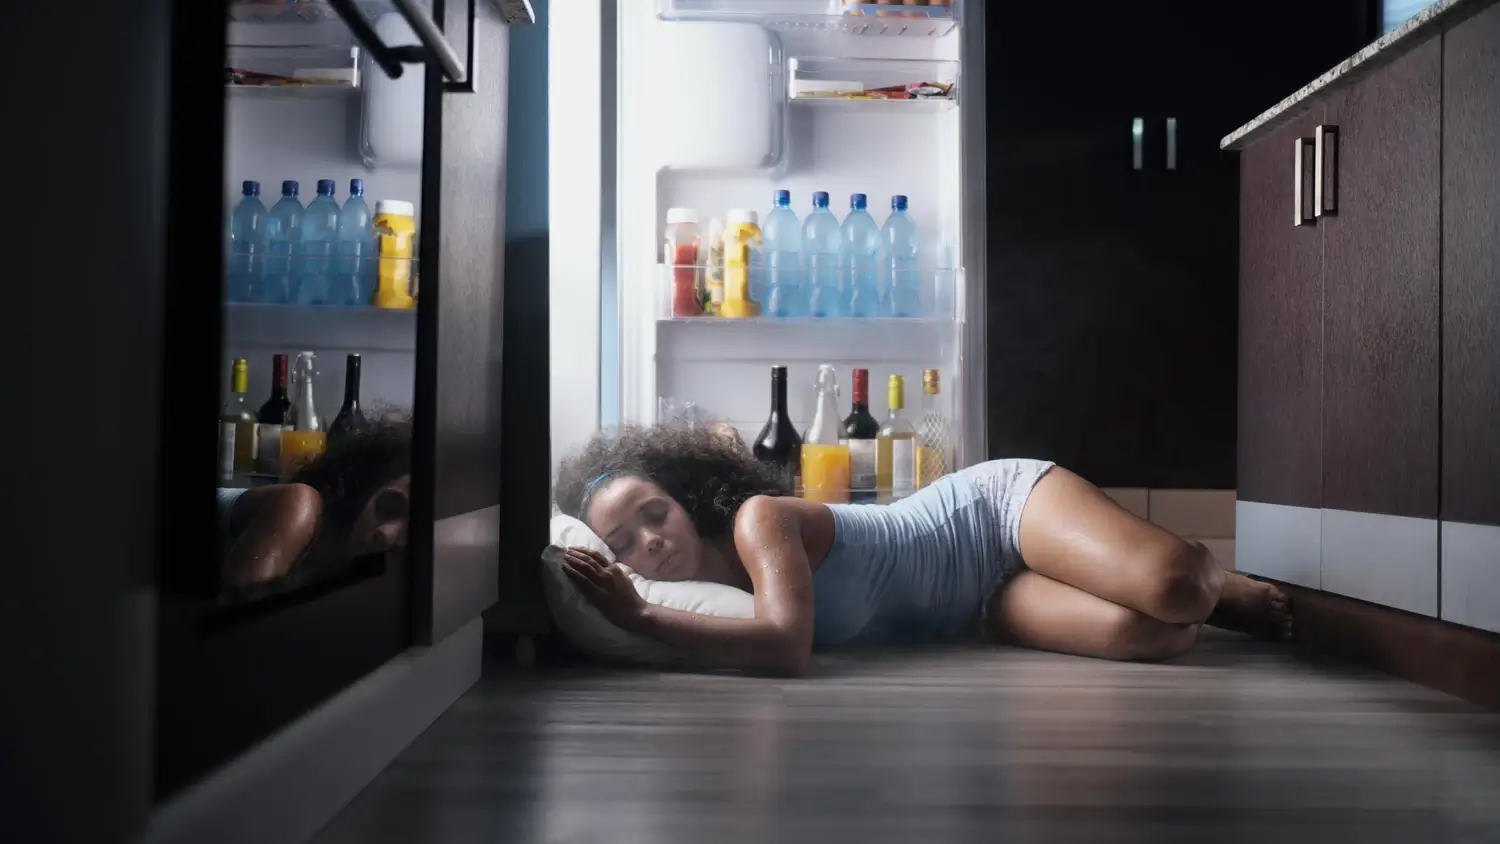 Женщина спит на полу, засунув голову в холодильник